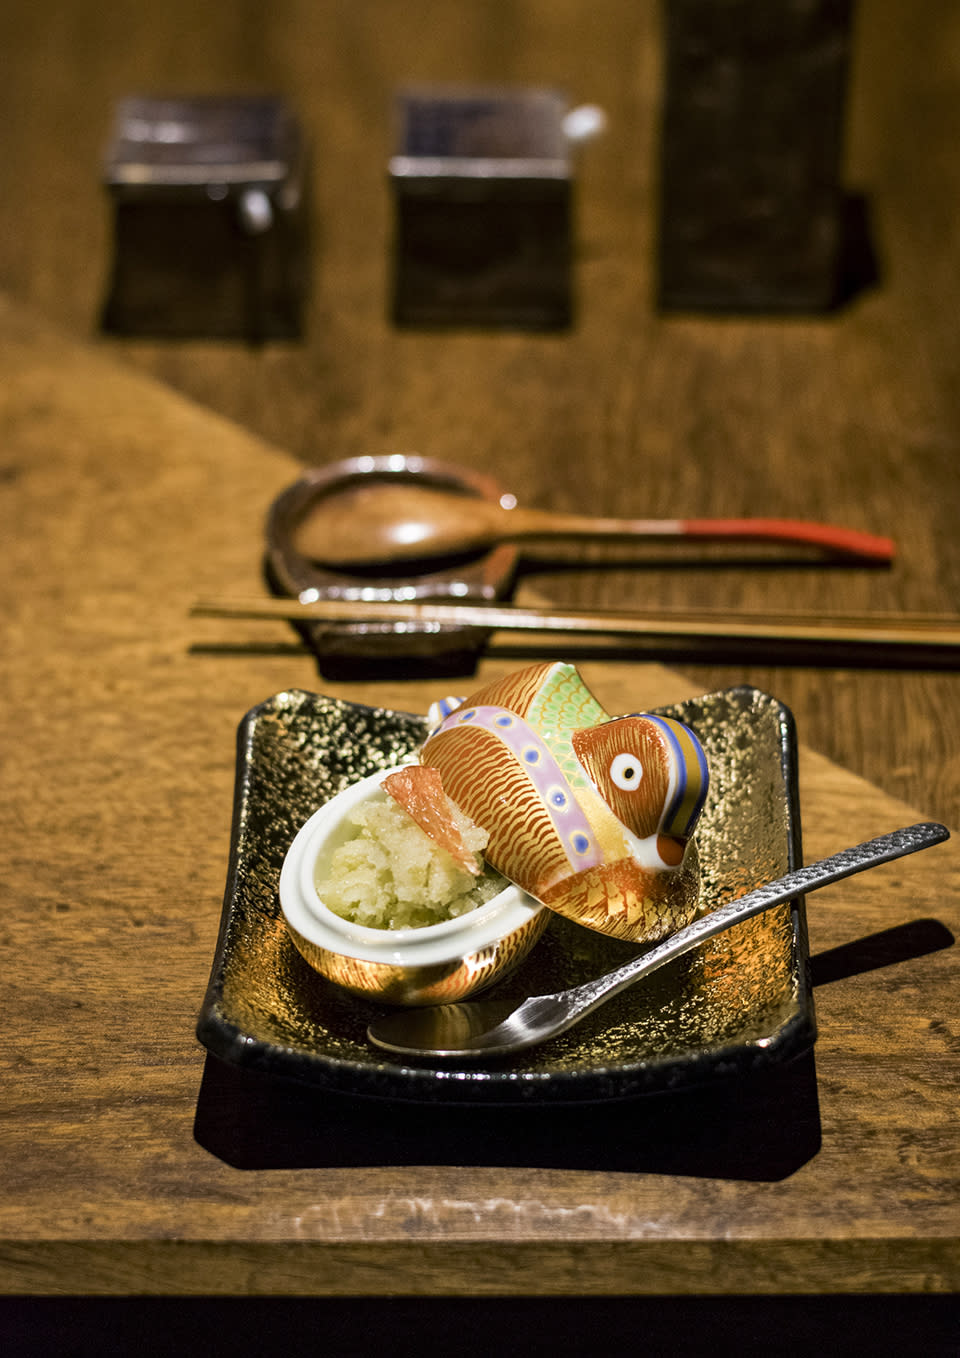 中環美食︱日本過江龍燒鳥餐廳「希鳥Kicho」 十二品燒鳥盛宴食炭火鹿兒島走地雞
